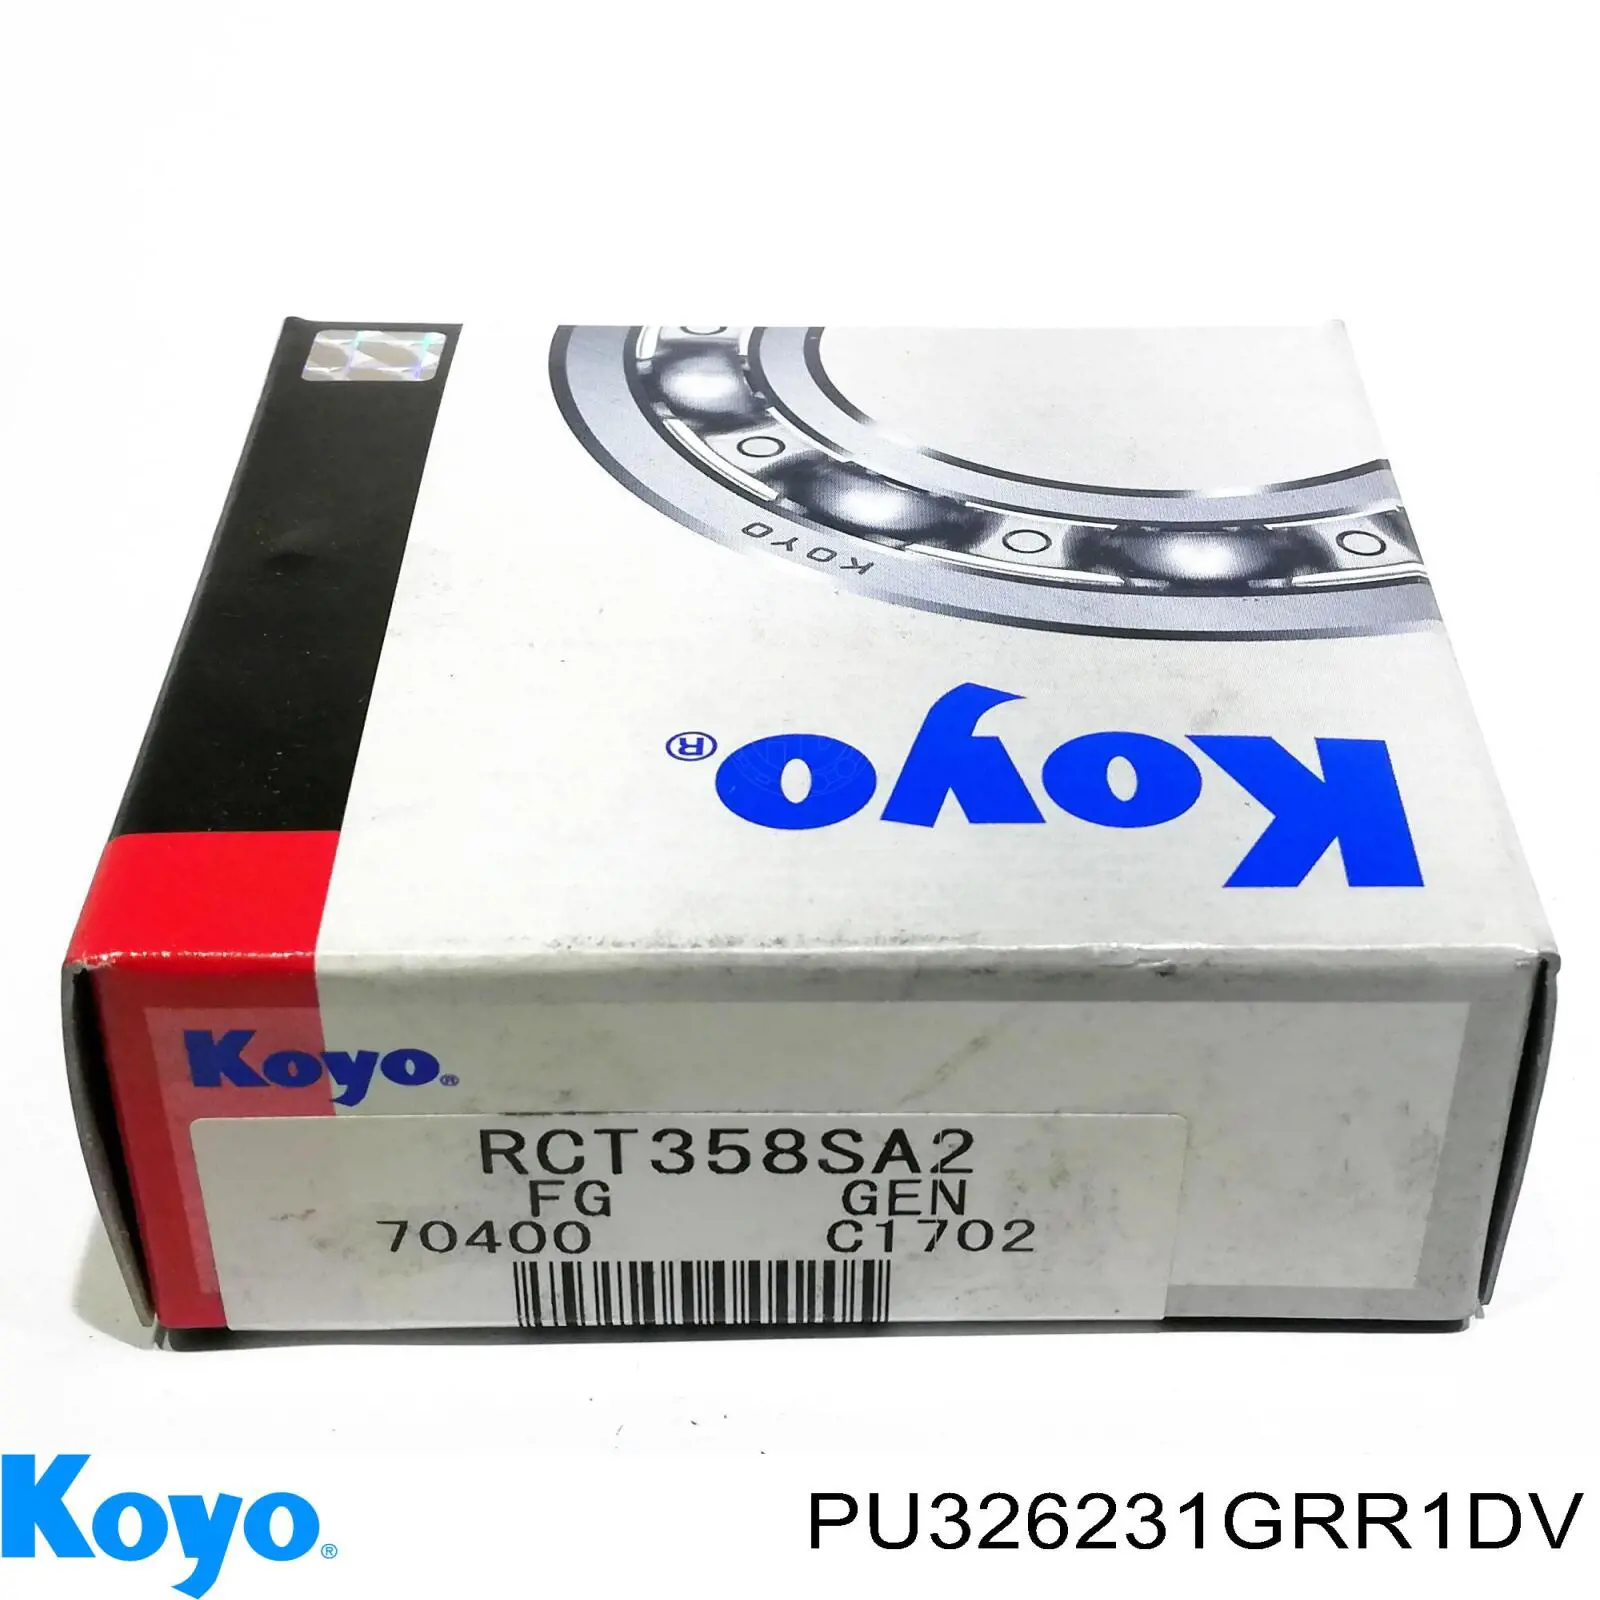 PU326231GRR1DV Koyo rodillo, cadena de distribución